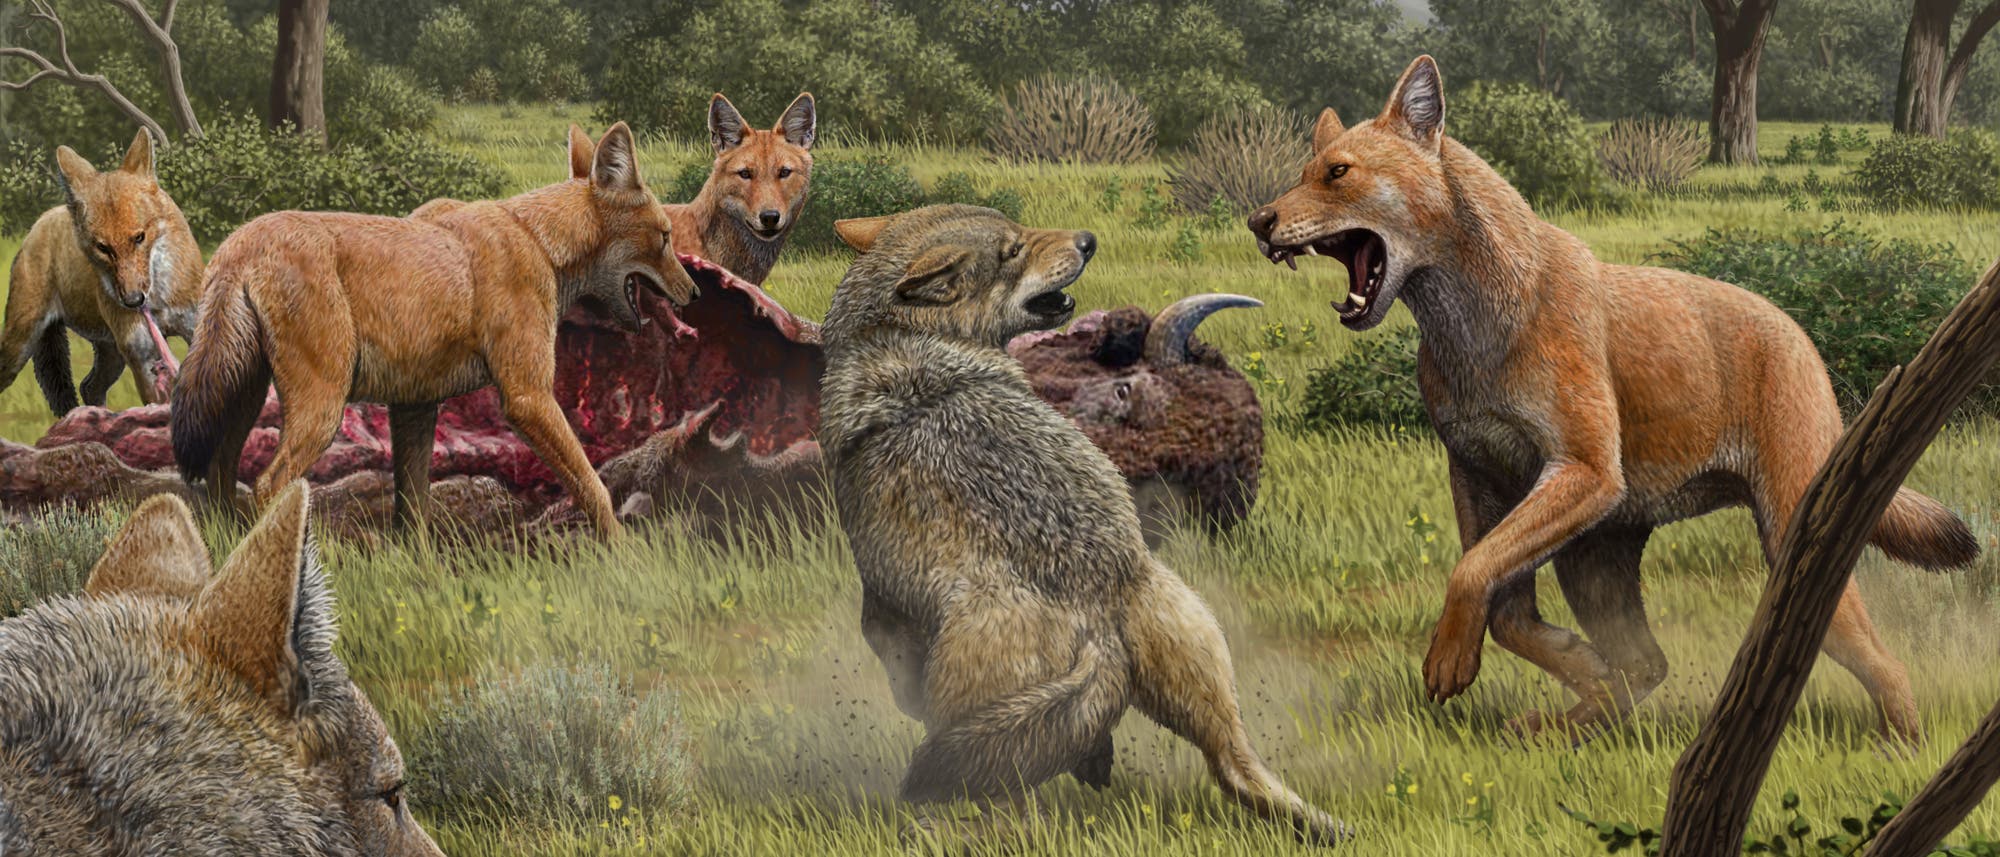 Ein Wolf (Mitte) legt sich mit einem Canis dirus (rechts) an. Letzerer trägt ein rötliches Fell. (Illustration)